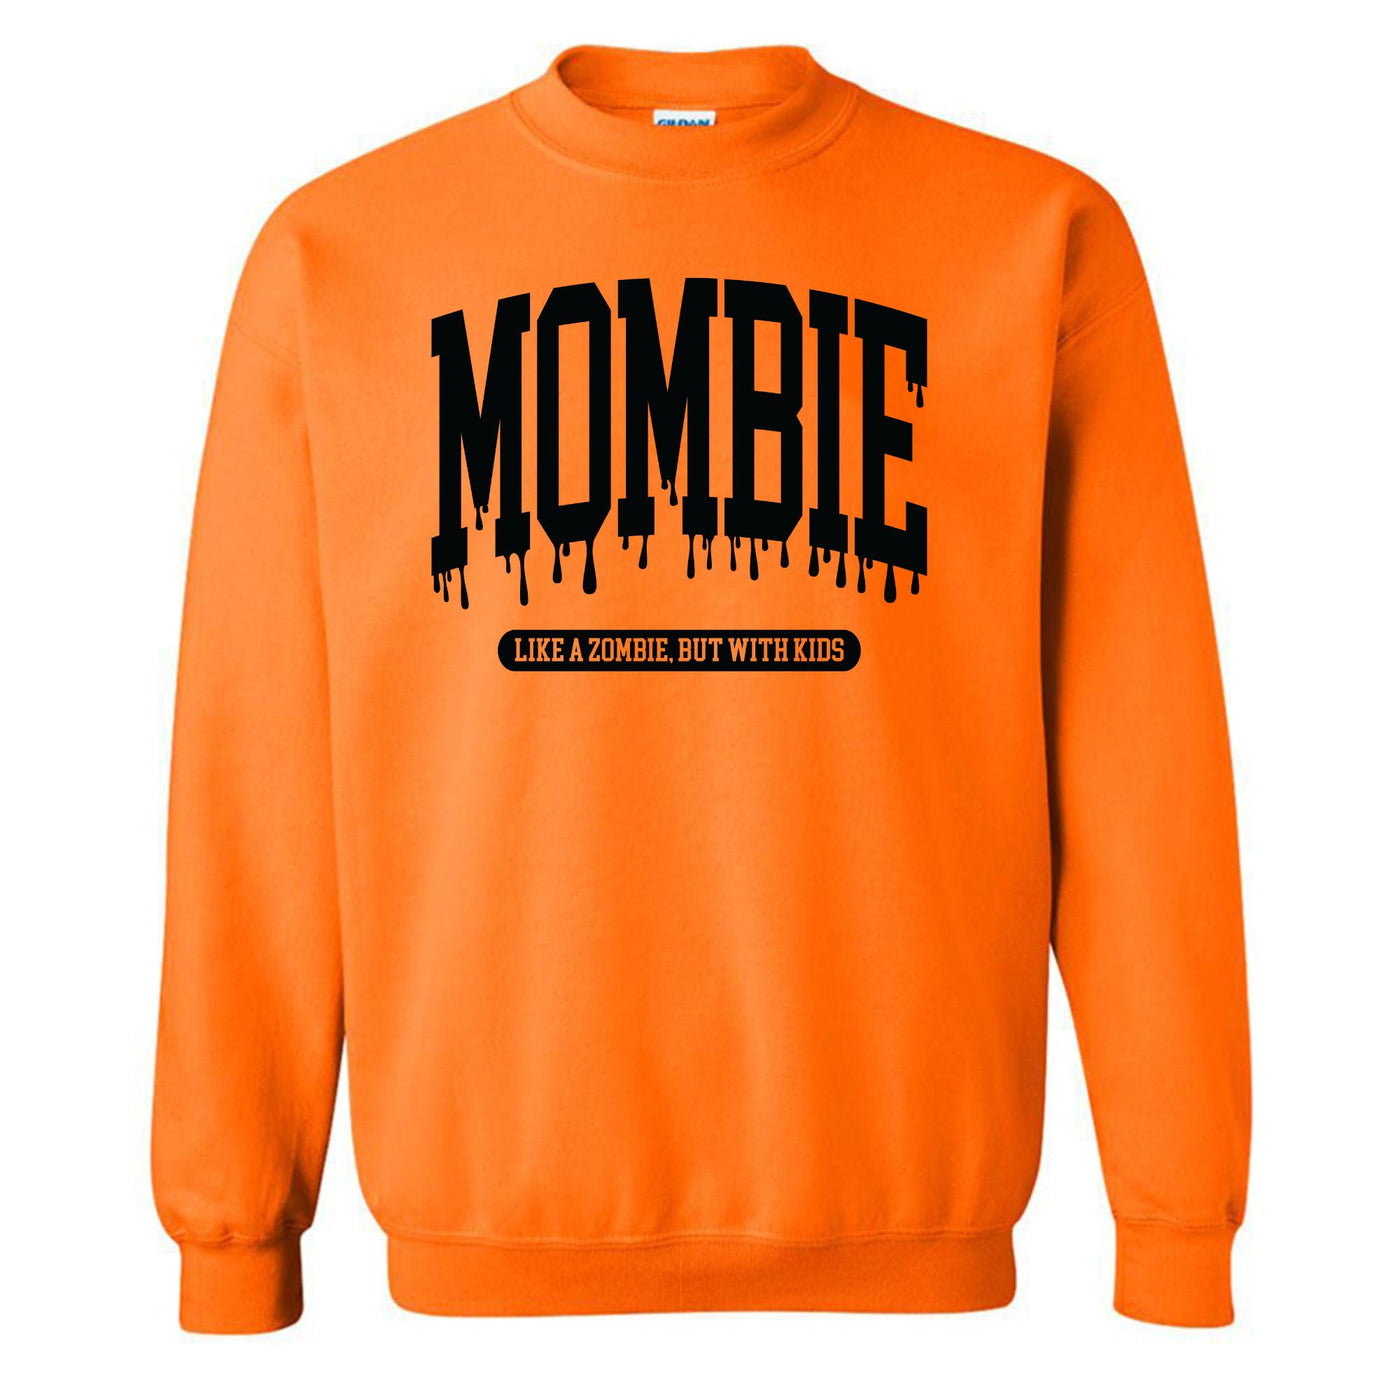 'Mombie' Crewneck Sweatshirt